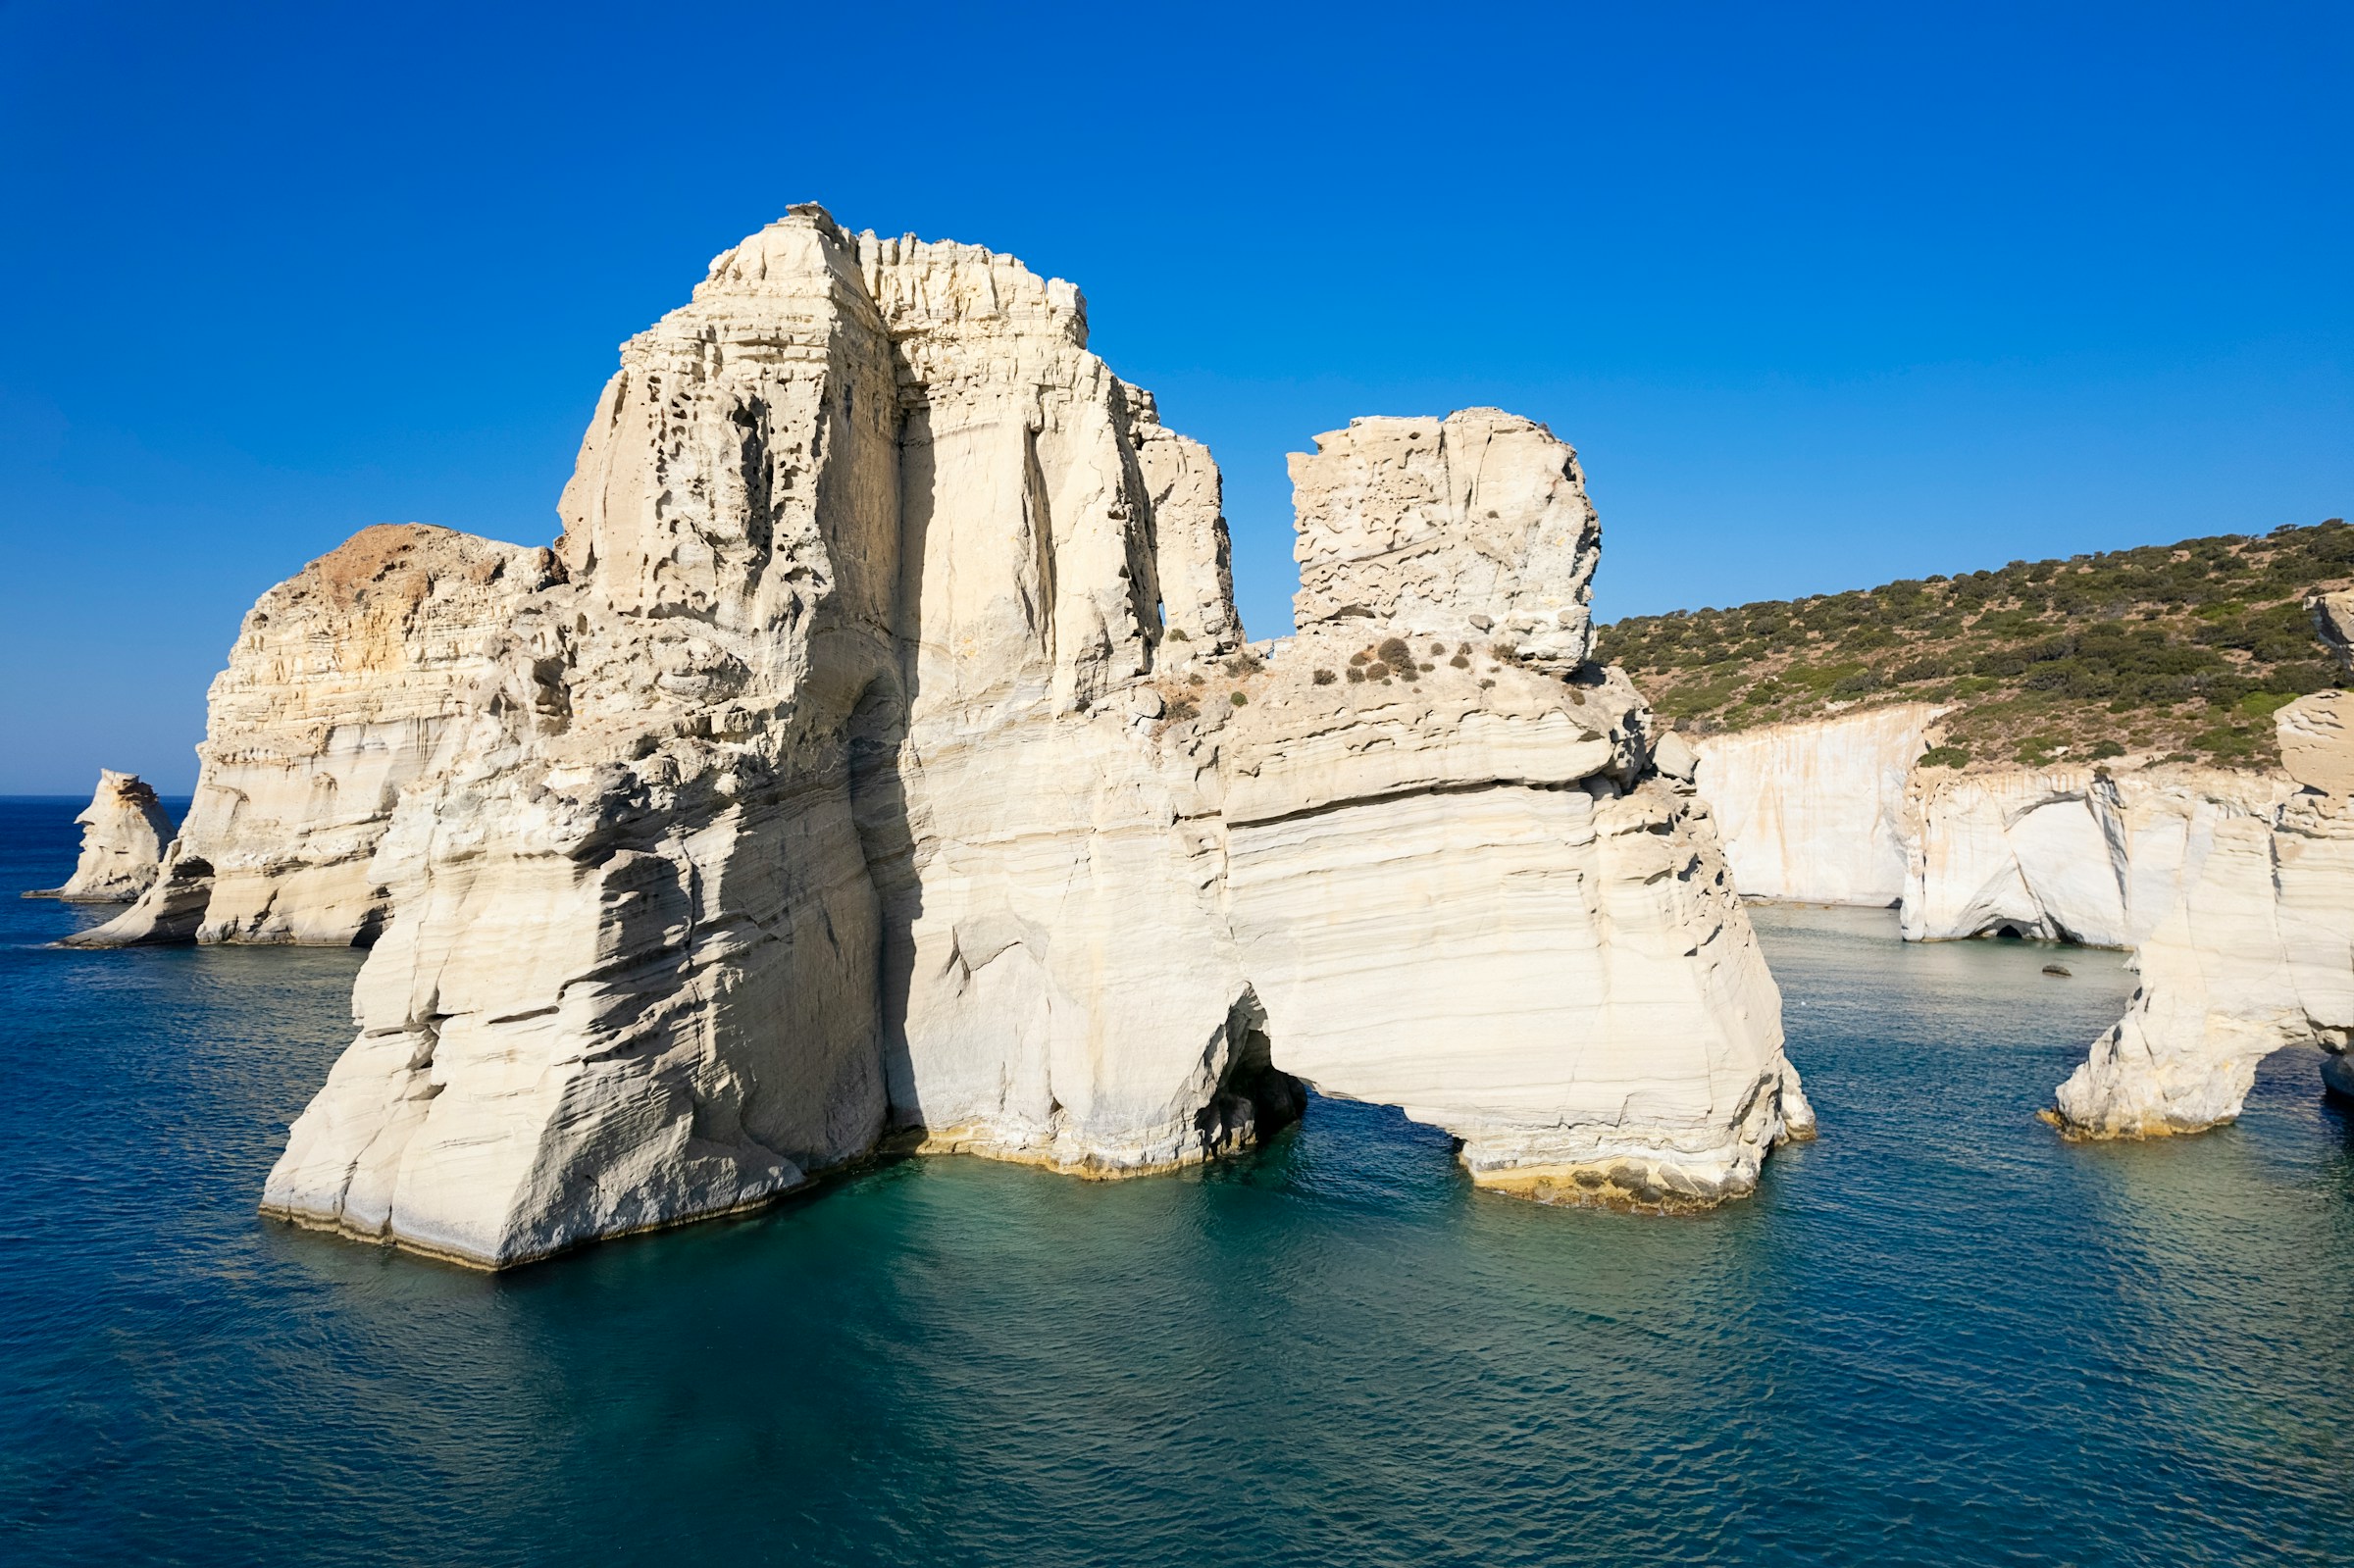 hvite klipper ut av havet på kysten av øya Milos